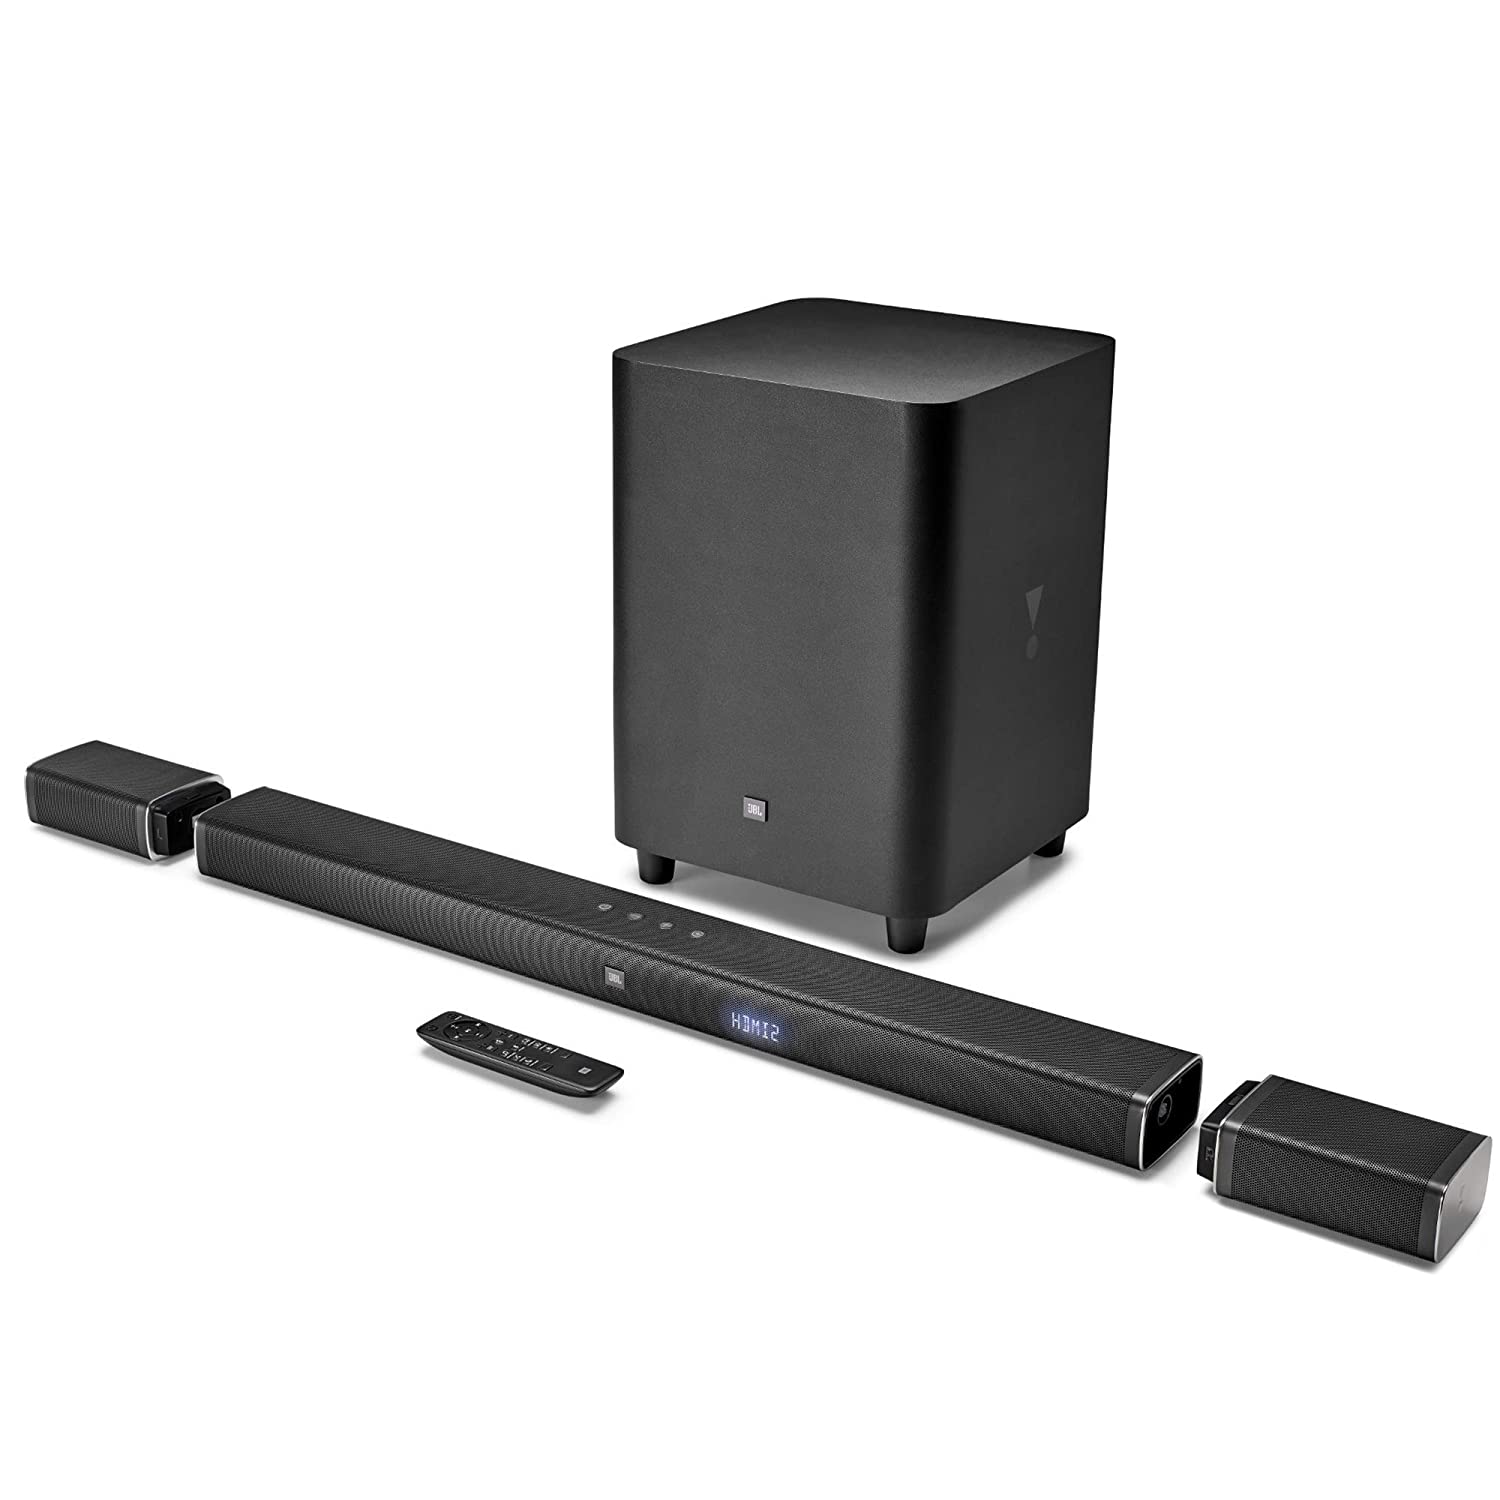 Jbl Bar 51 Powerful 4k Uhd Soundbar With Wireless Surround Speakers